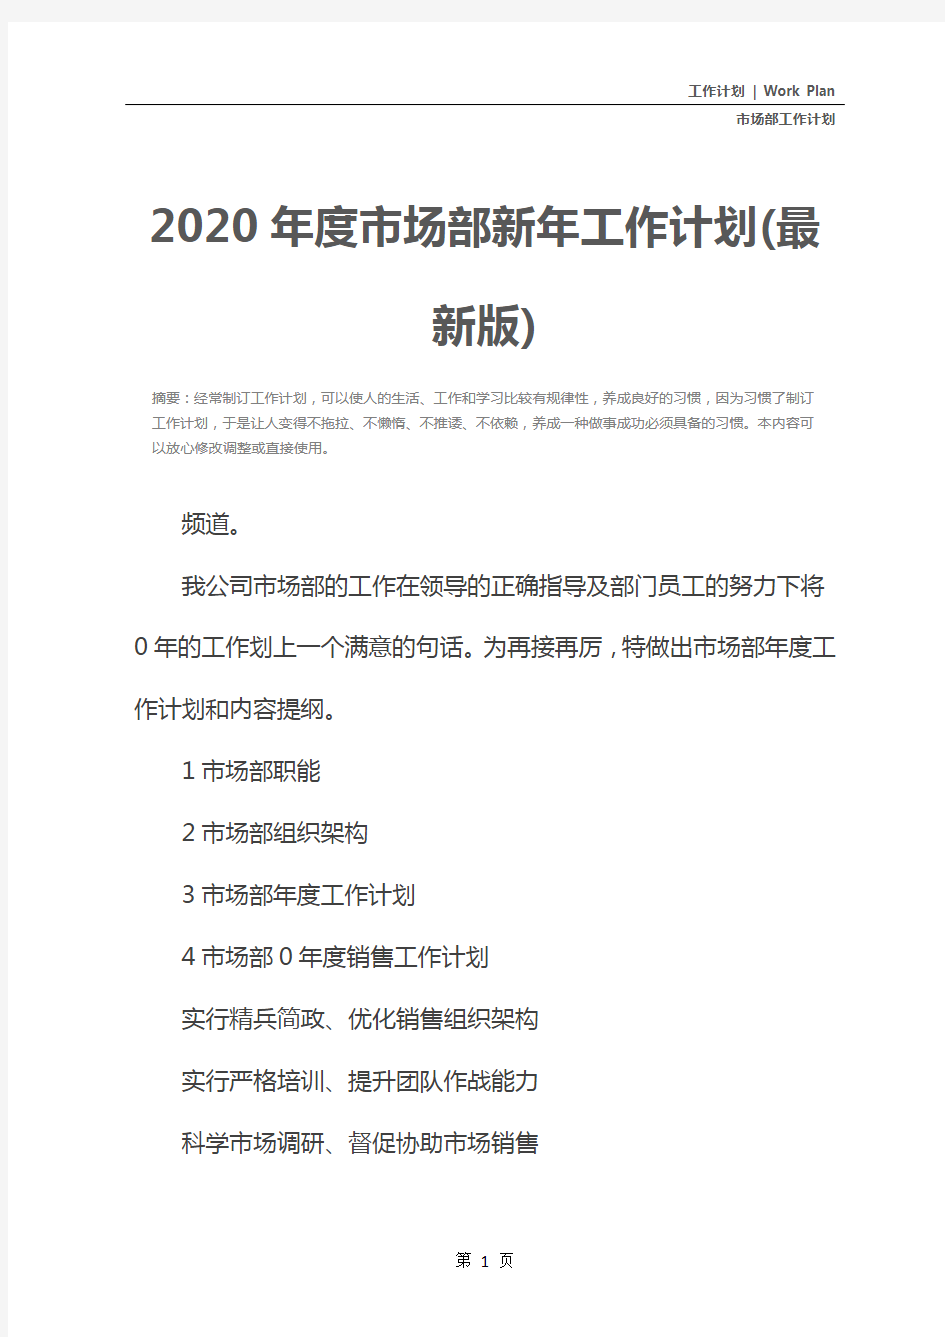 2020年度市场部新年工作计划(最新版)